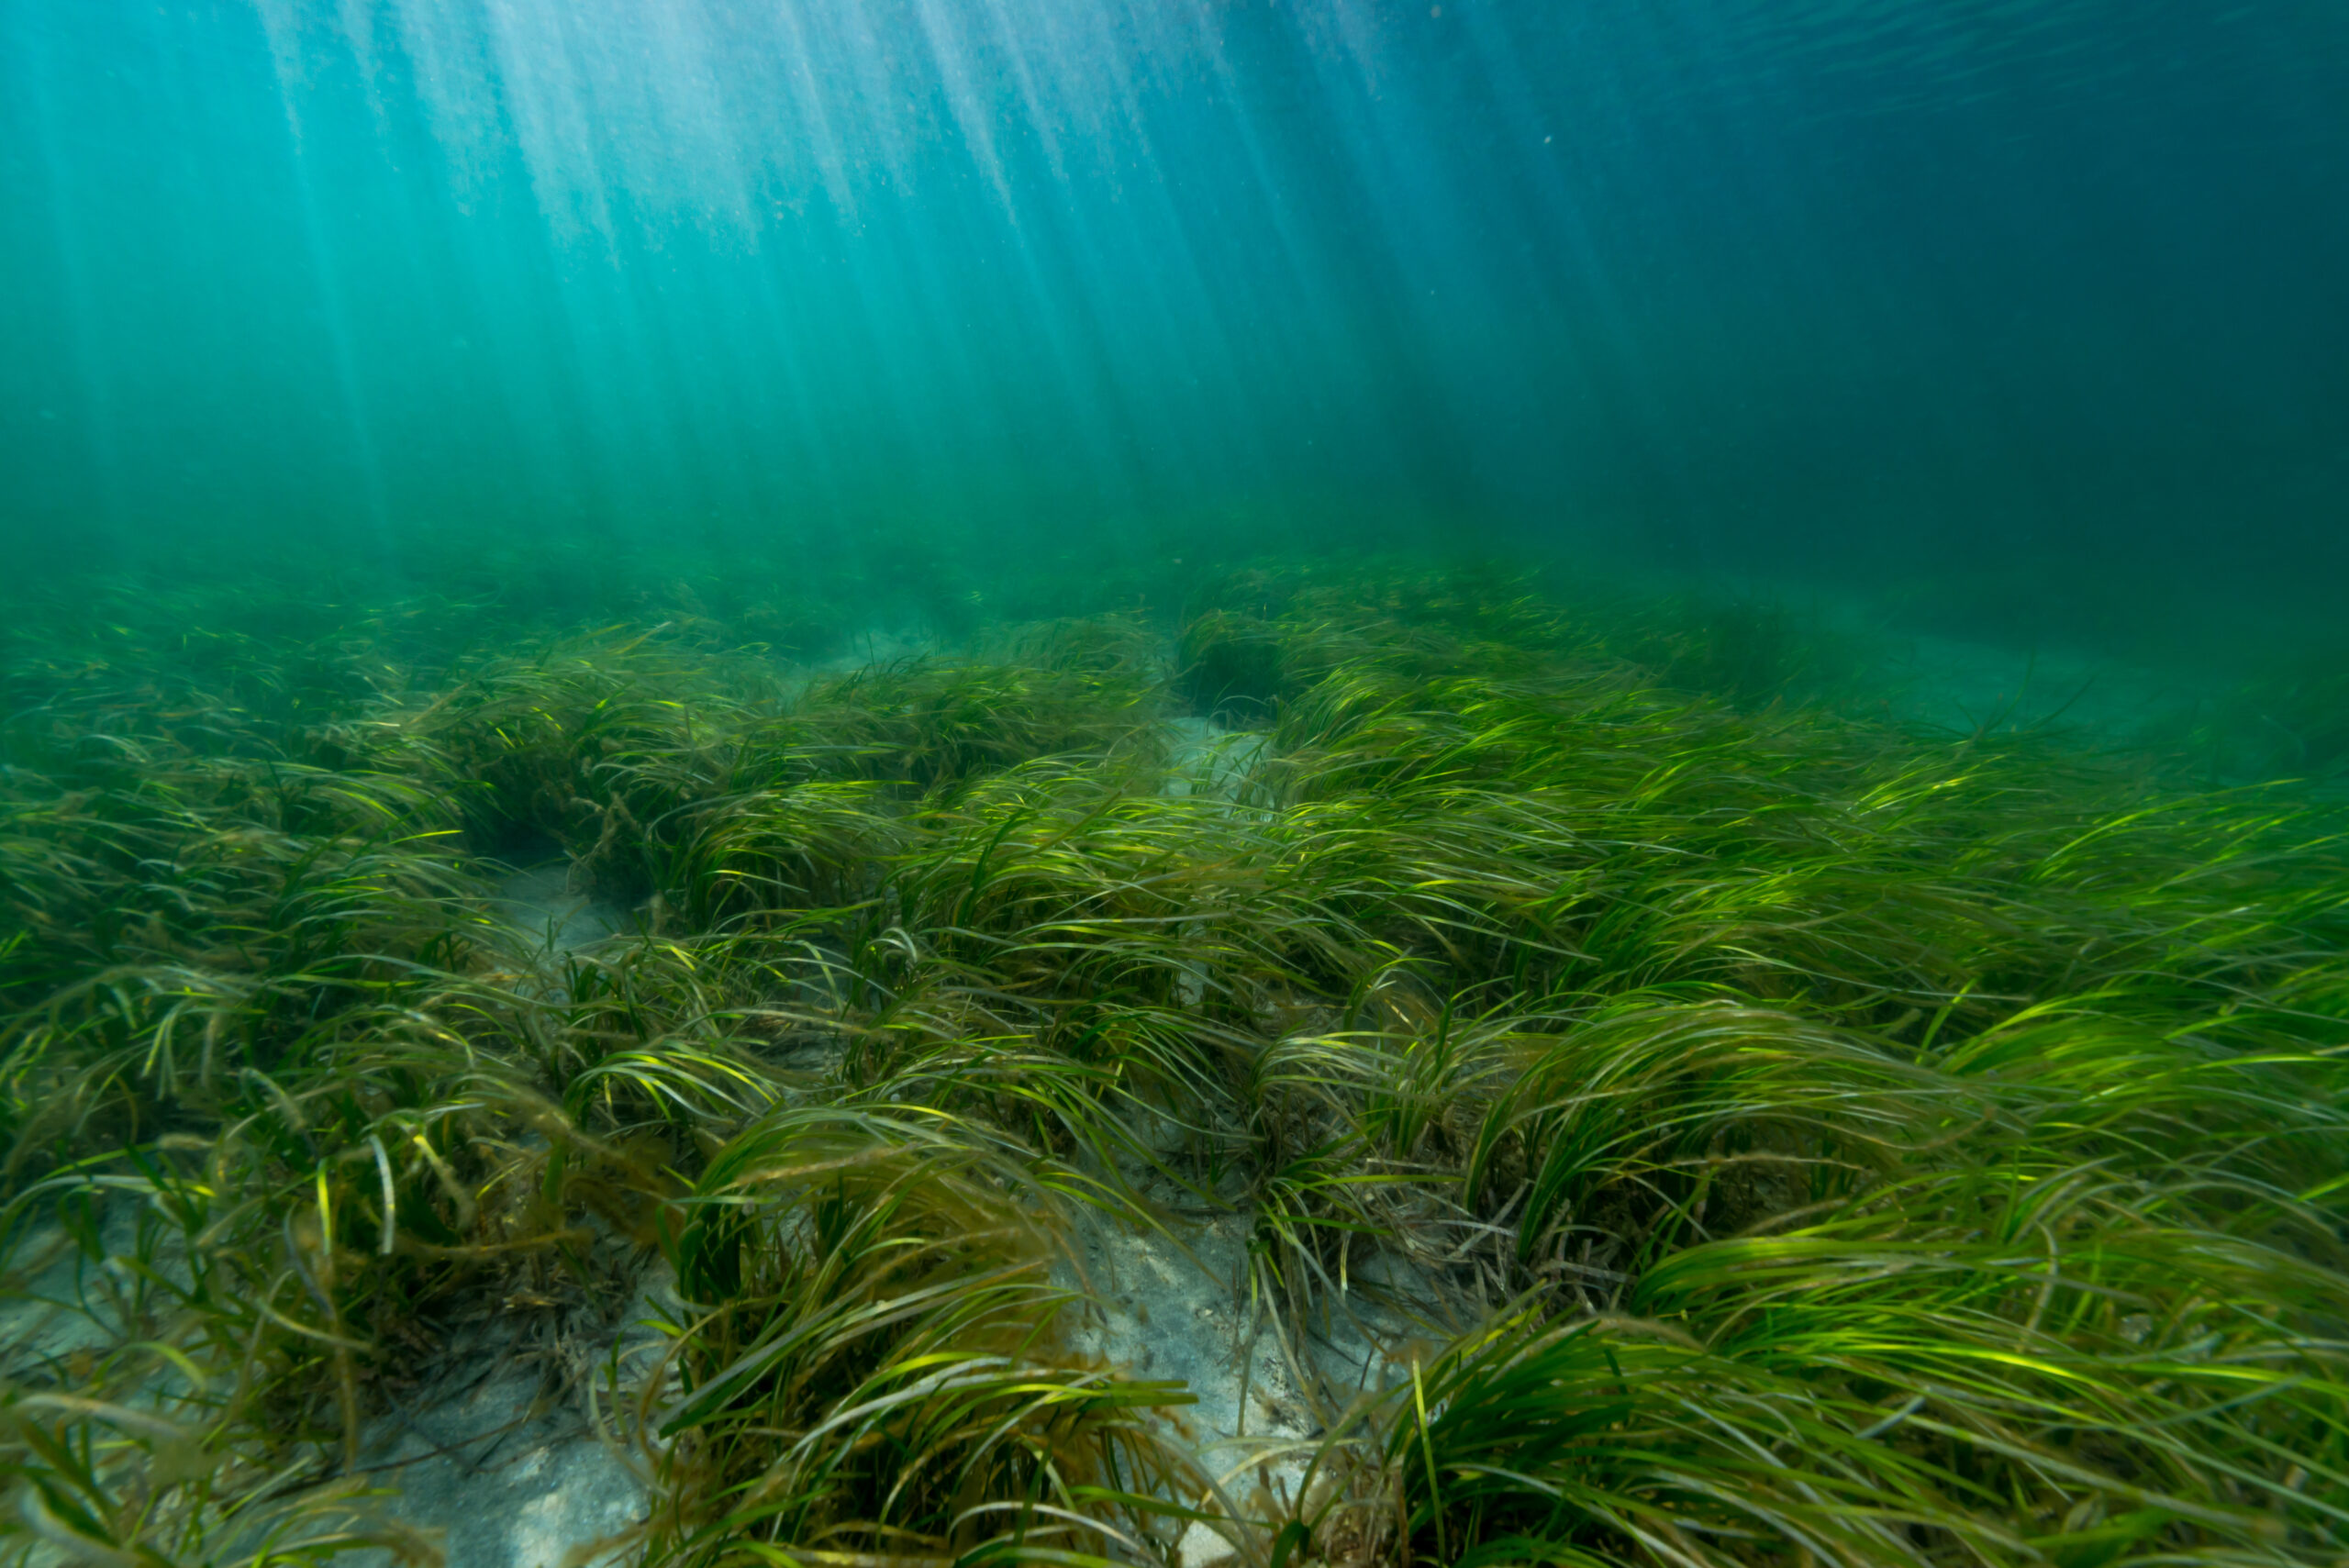 Underwater vegetation